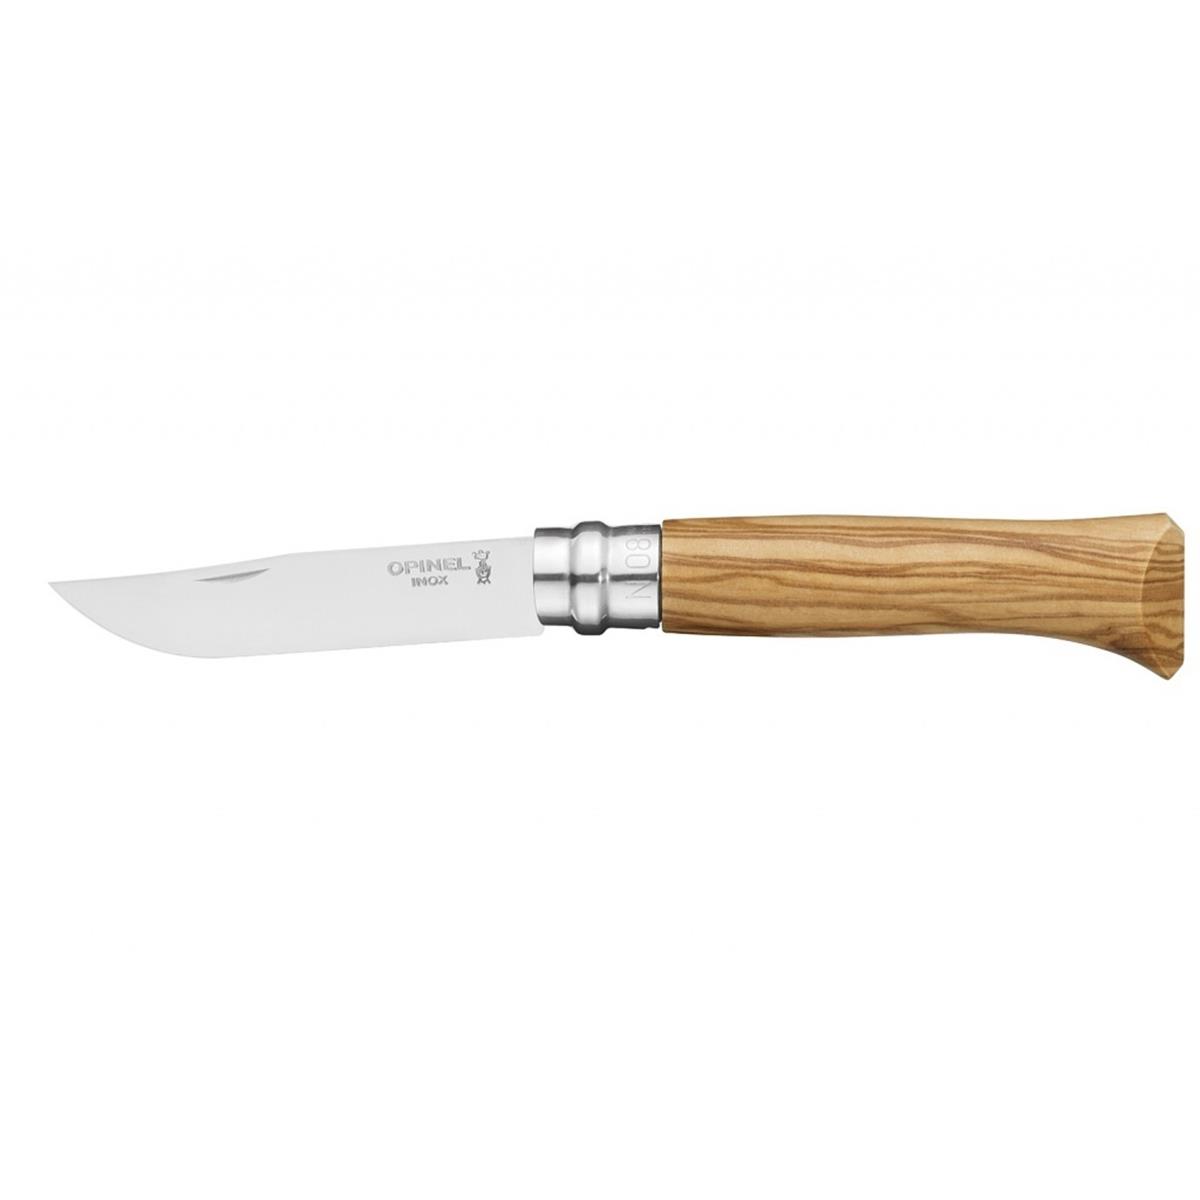 Нож филейный №8 VRI Folding Slim Olivewood нерж.сталь, длина клинка 8см (0011443) OPINEL кастрюля 6 5 л нерж